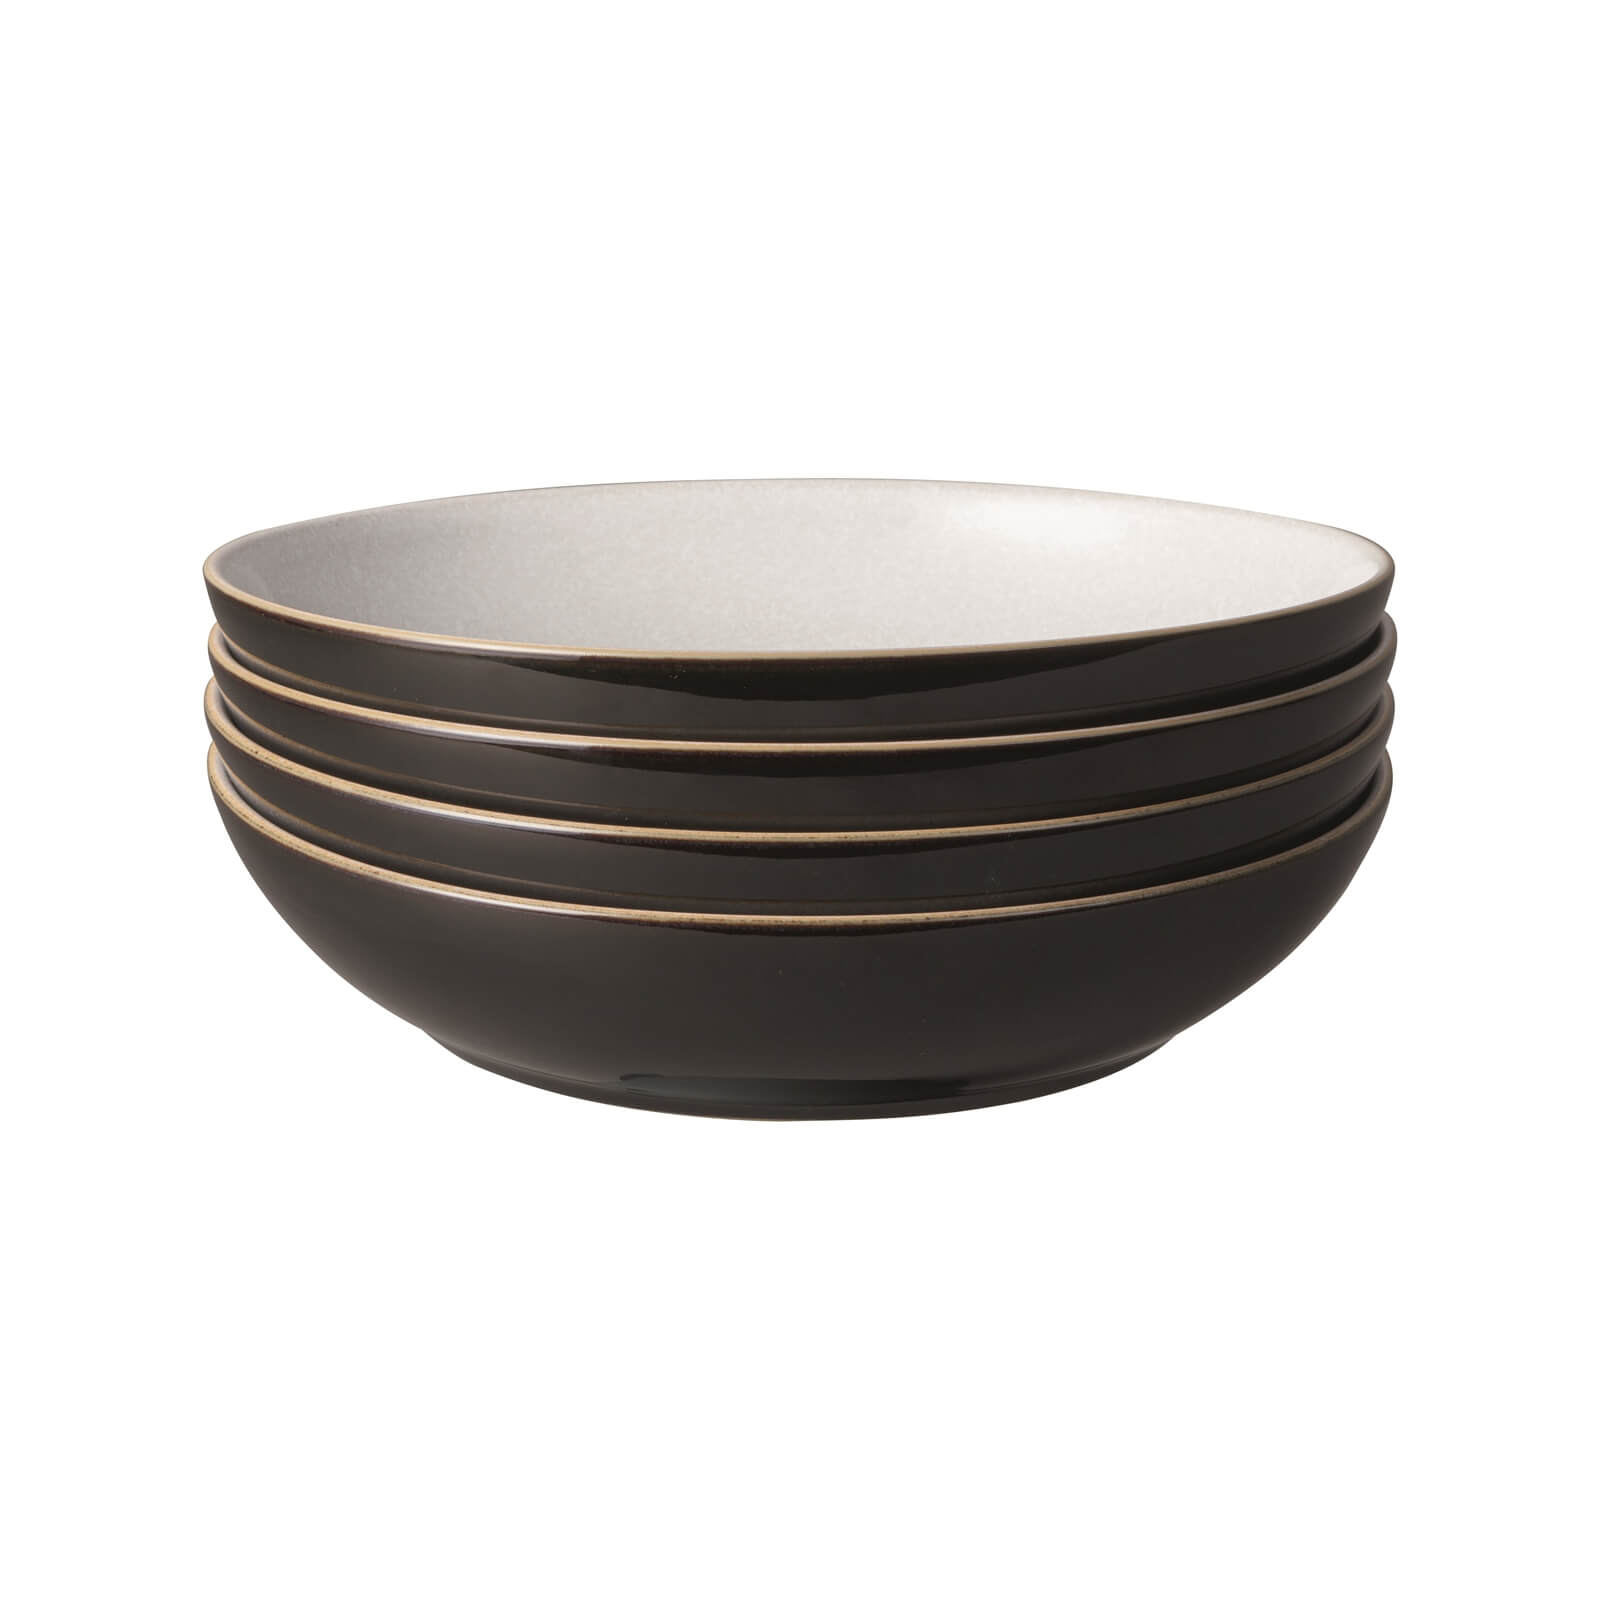 Elements Pasta Bowls - Black - 4 Piece Set